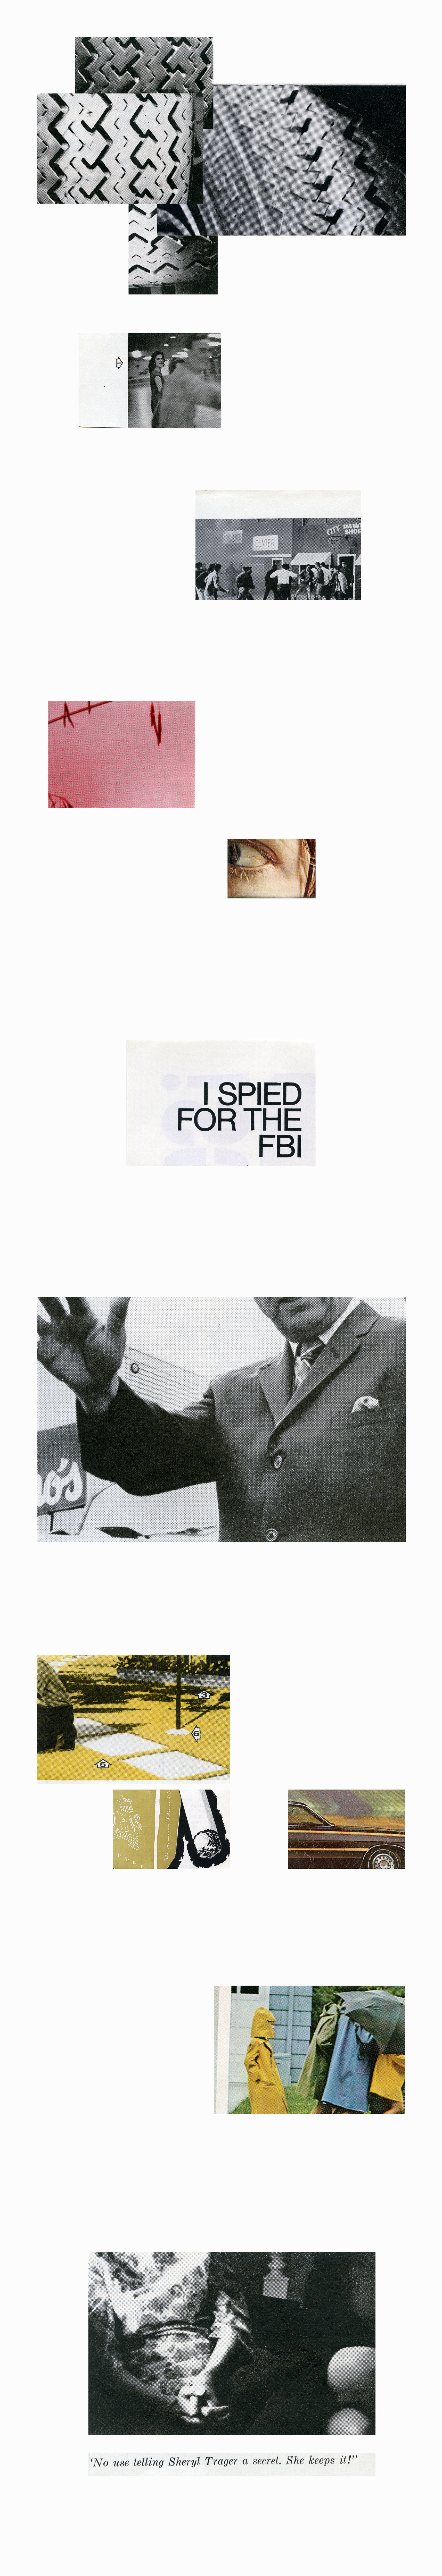 I Spied for the FBI.jpg